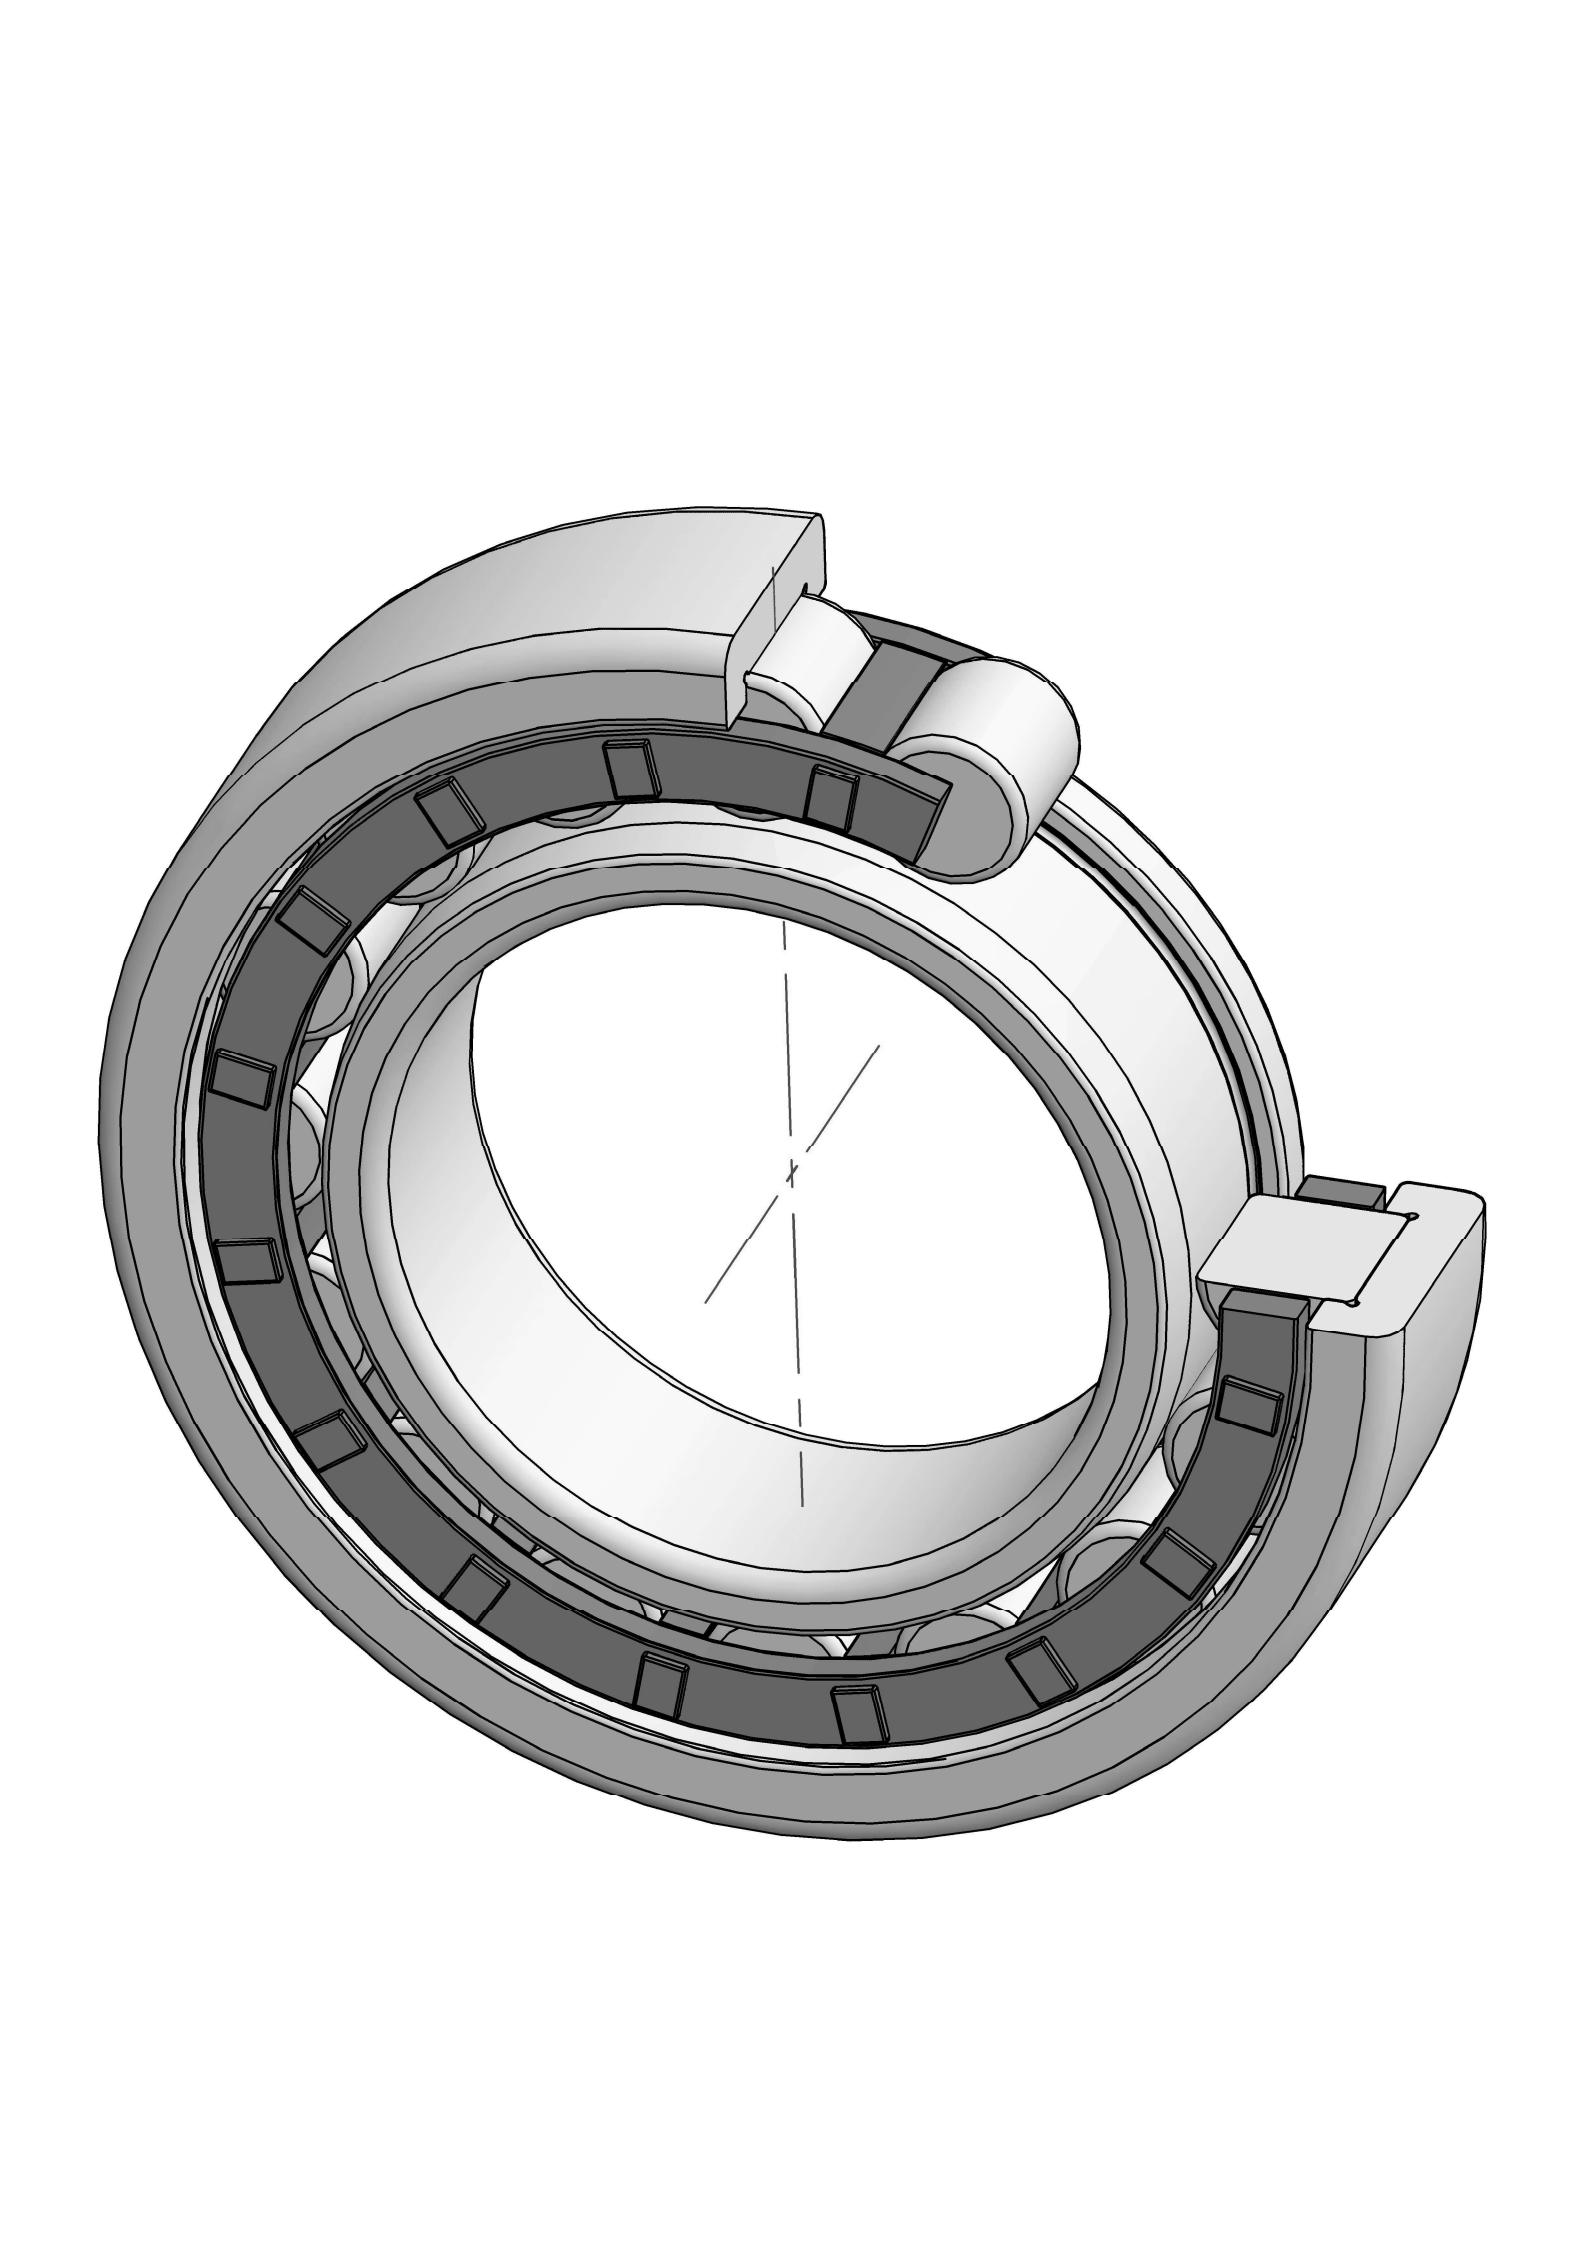 NJ332-EM otu ahịrị cylindrical roller bearing